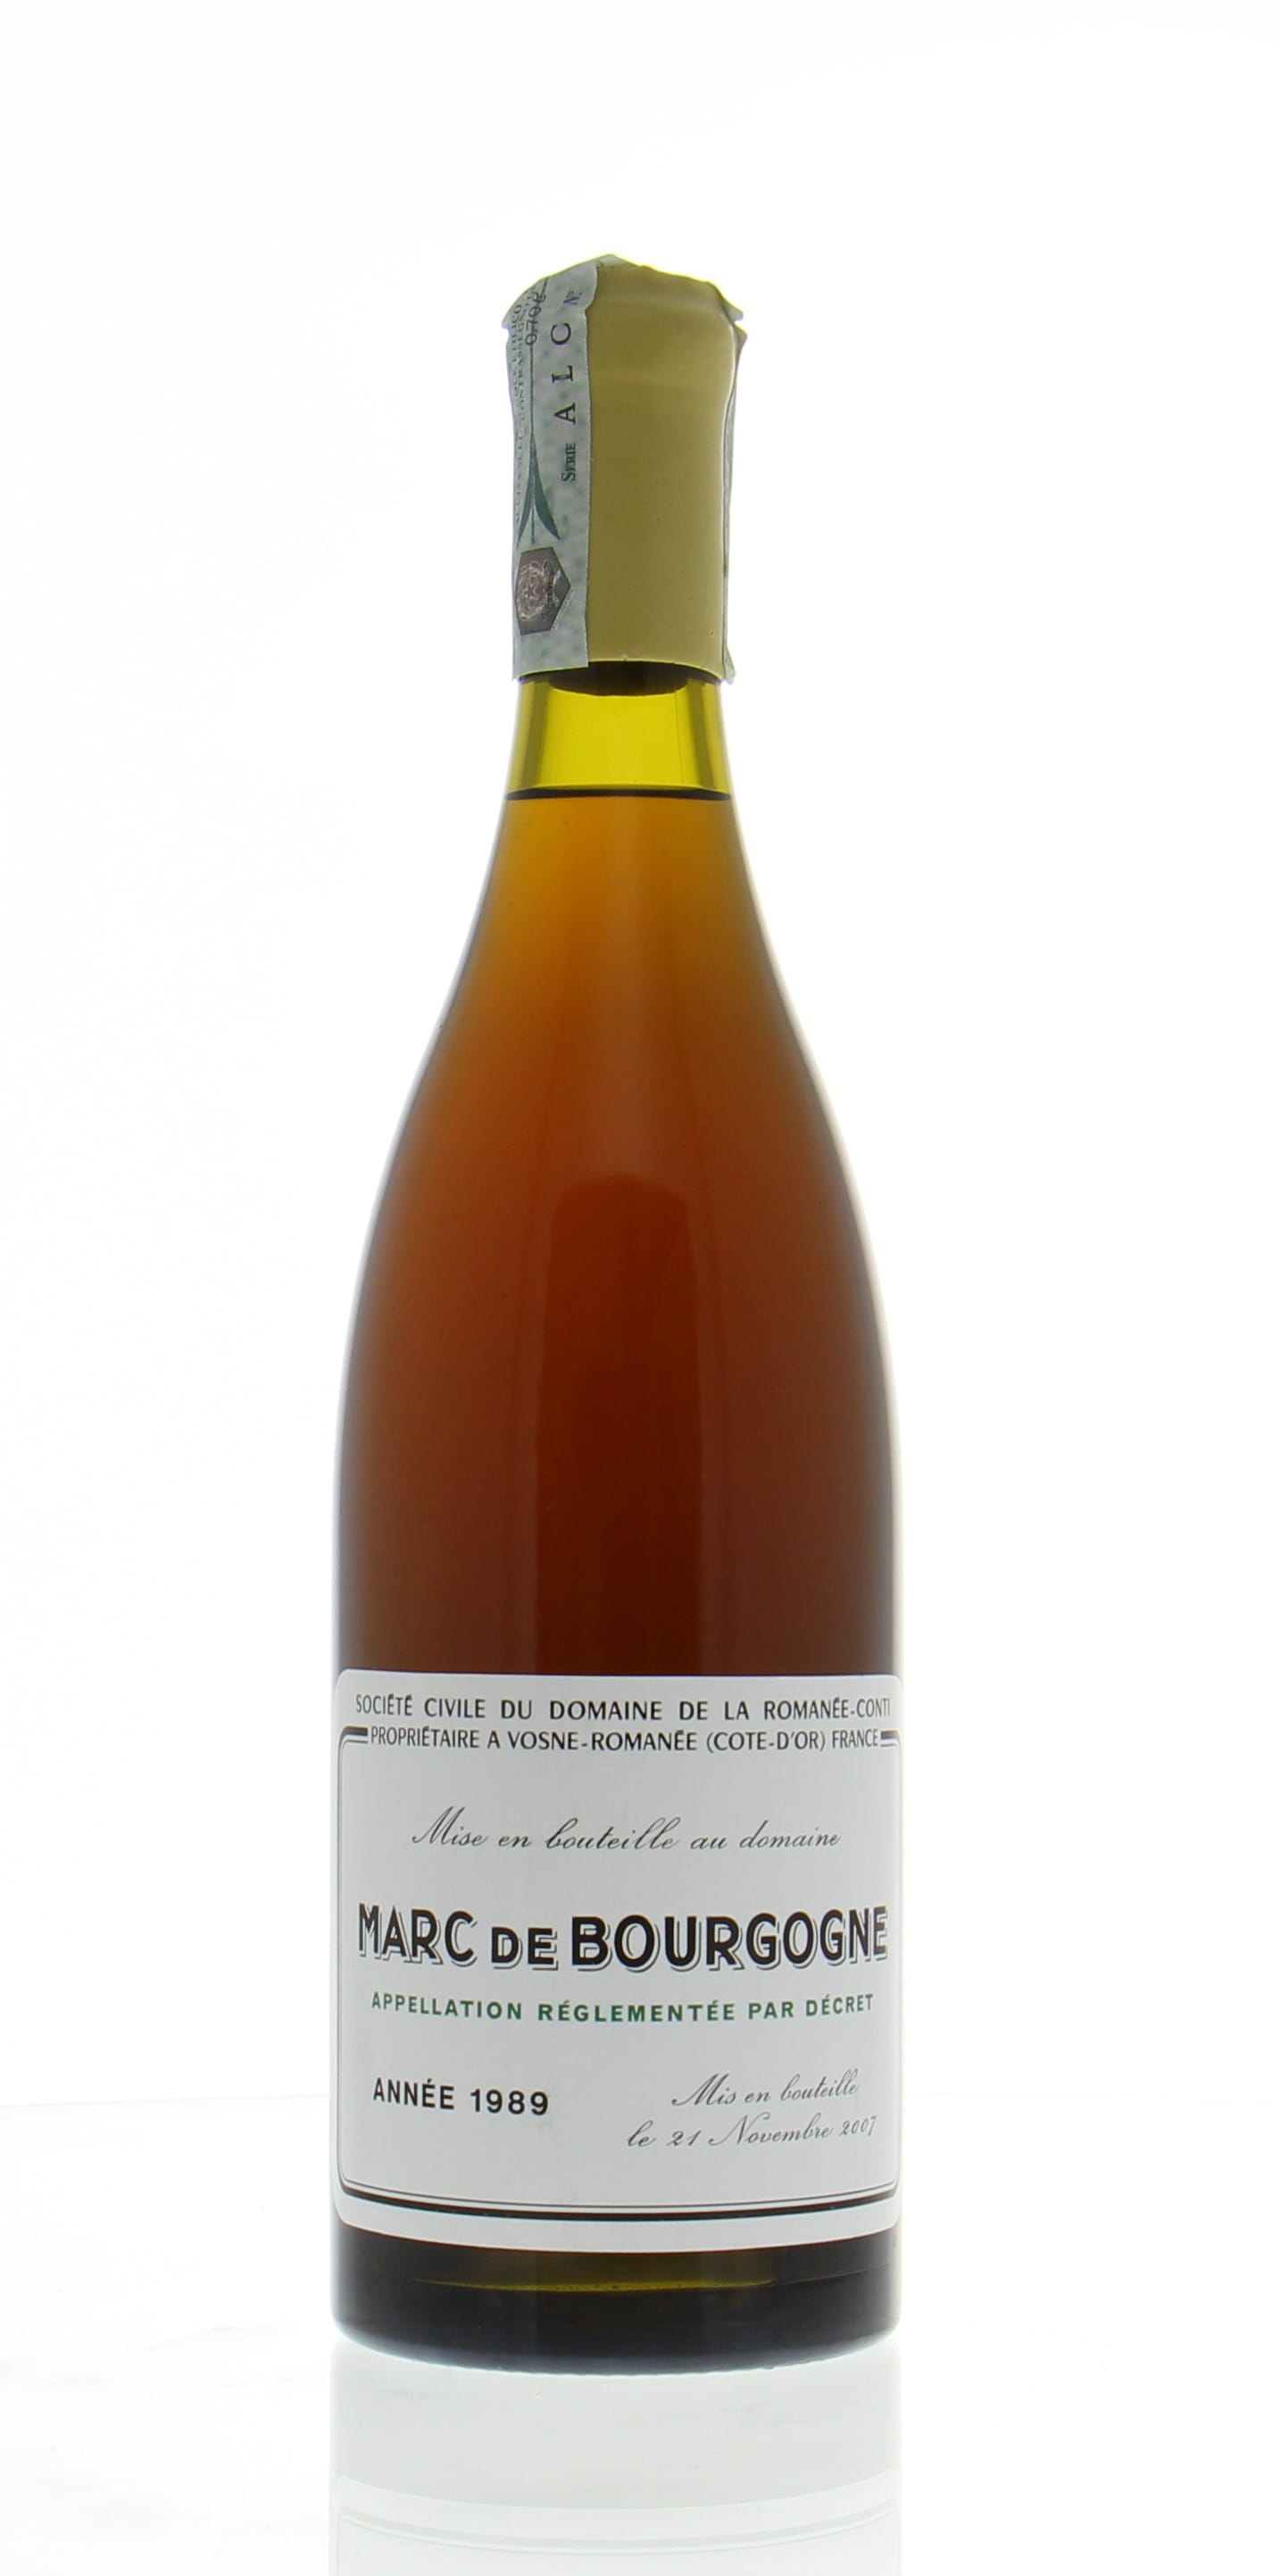 Domaine de la Romanee Conti - Marc de Bourgogne 1989 Perfect